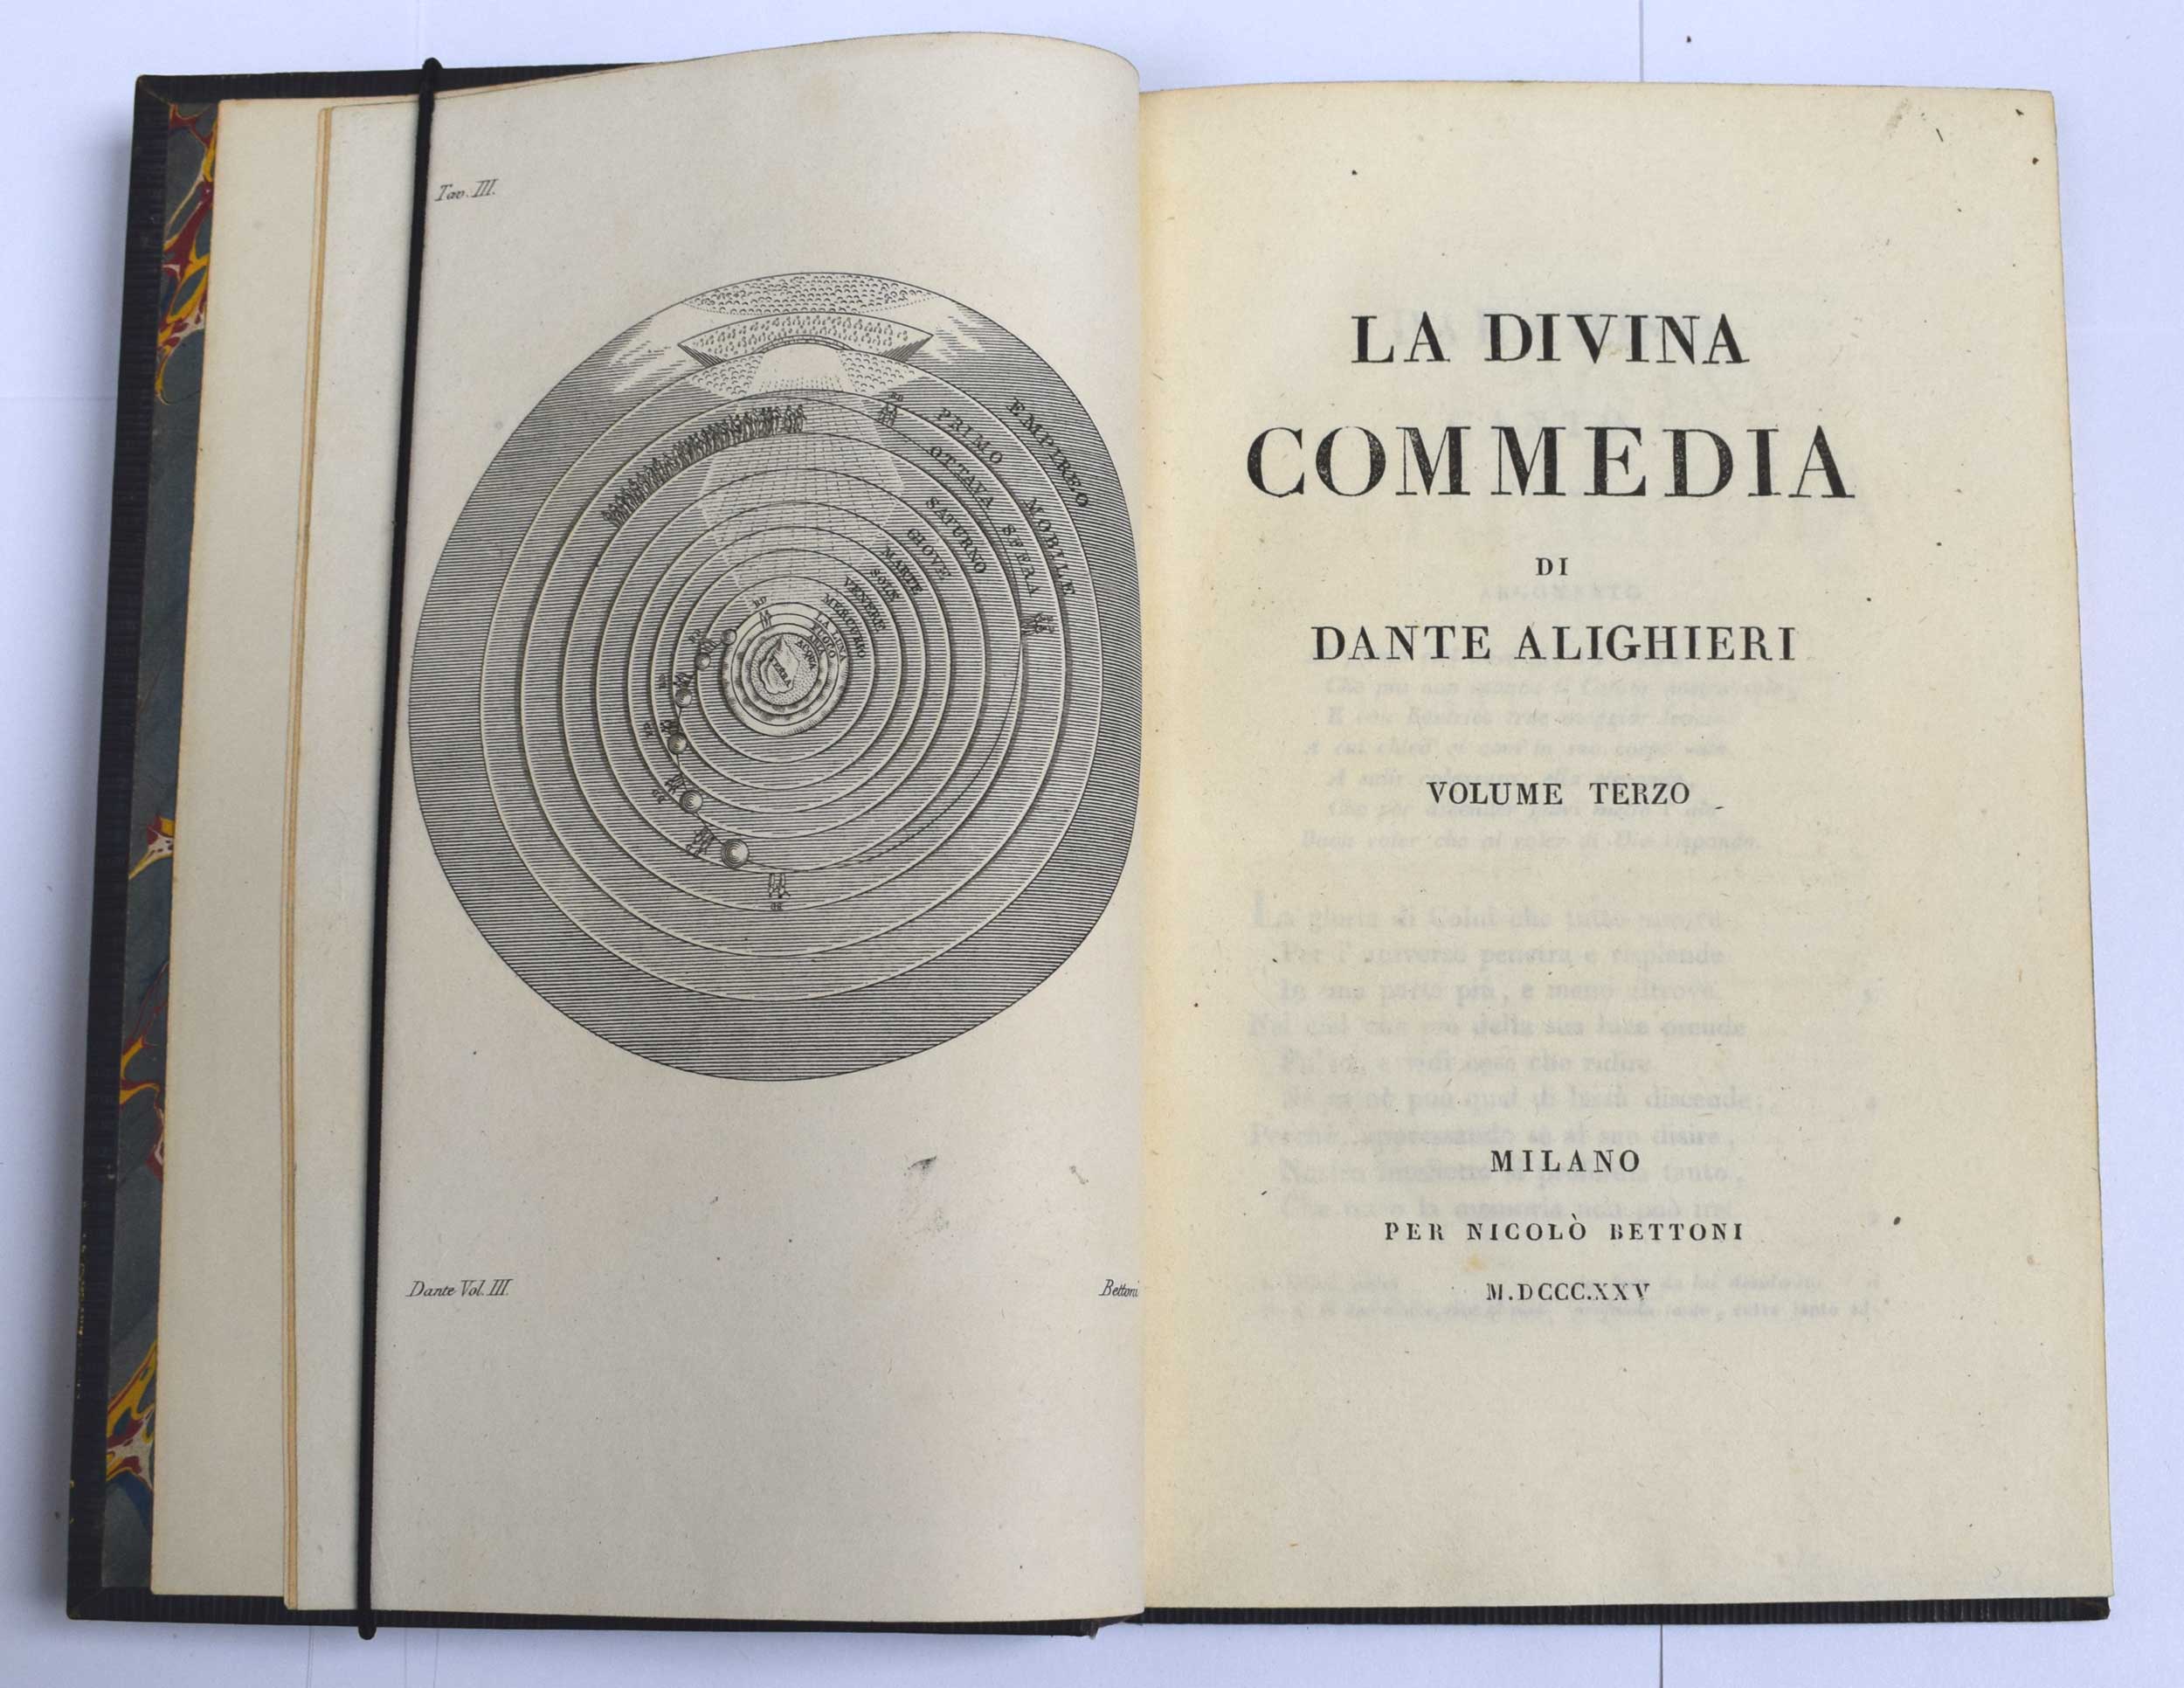 La Divina Commedia [The Divine Comedy]. 3 volume set.